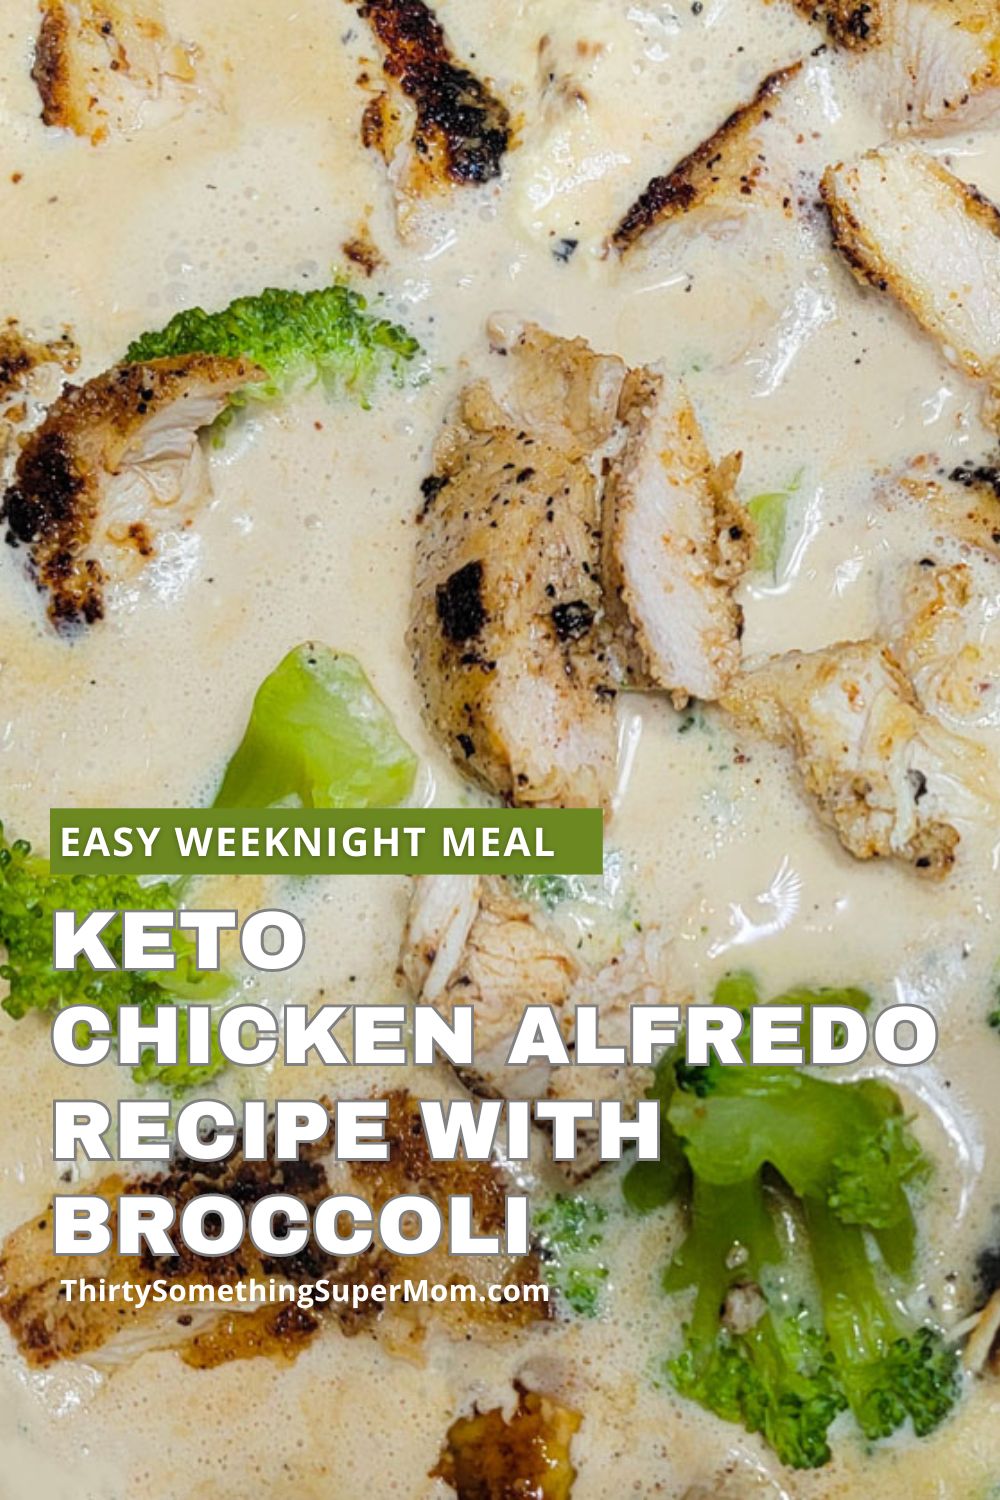 Keto chicken alfredo recipe with broccoli